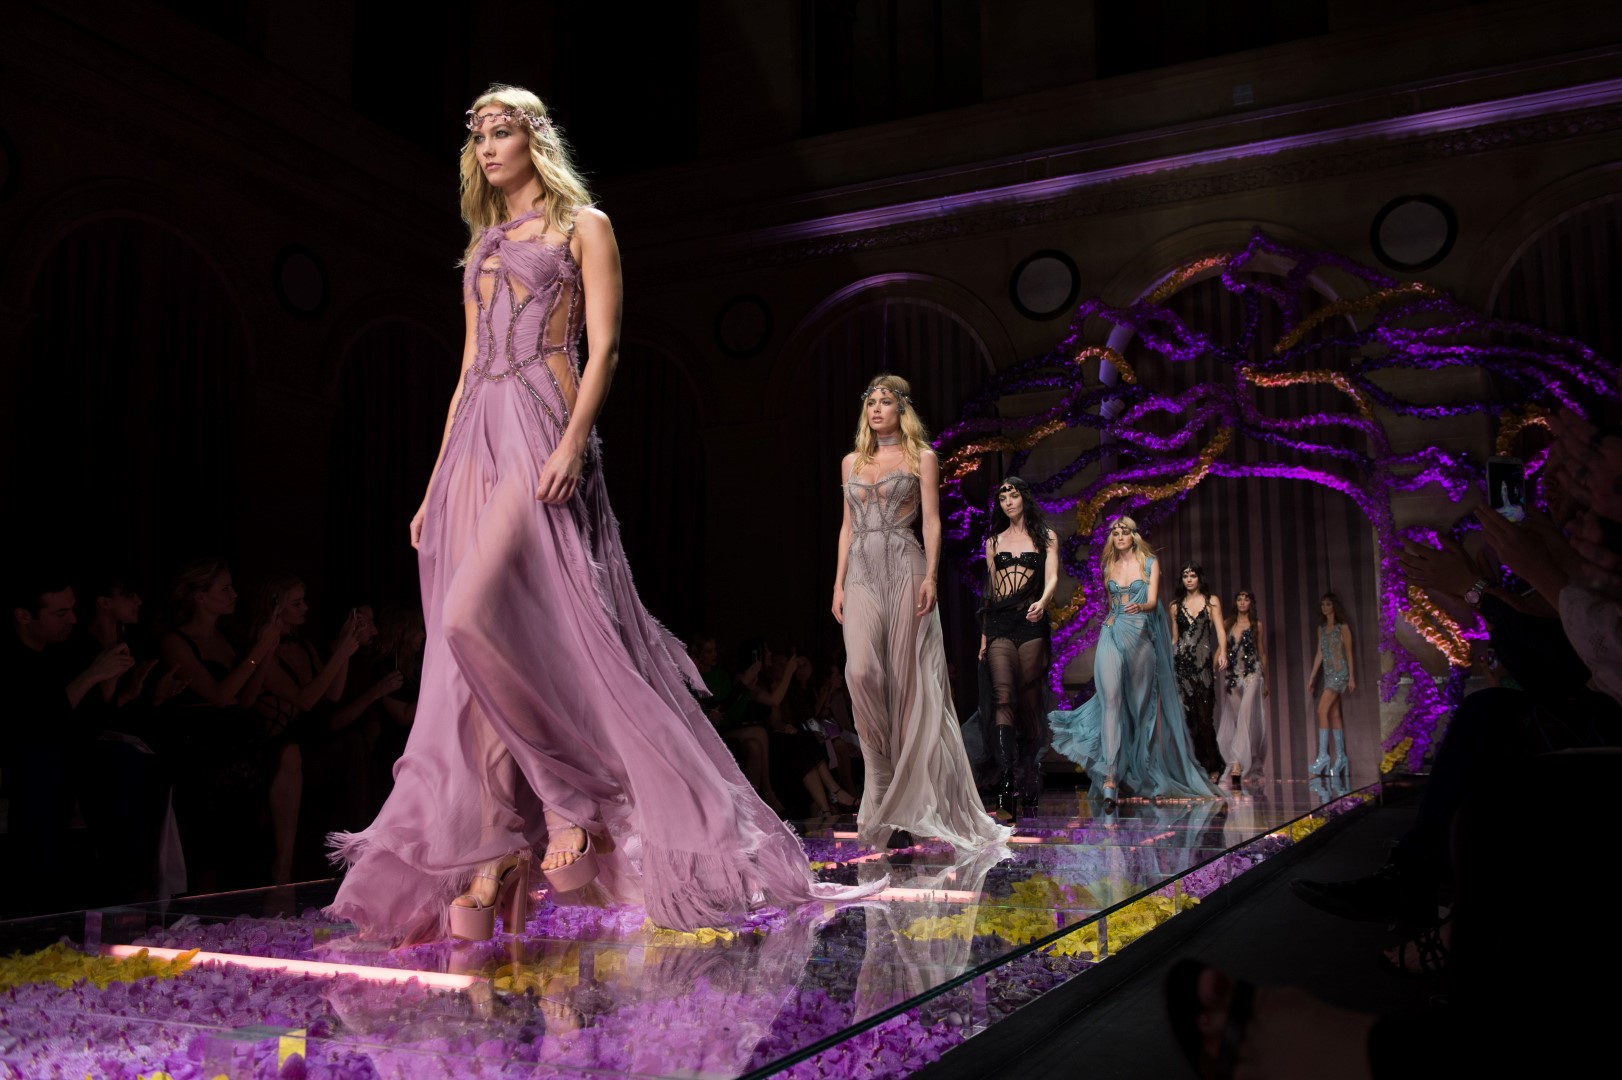 Sfilate Parigi Alta Moda Luglio 2015: Atelier Versace, la collezione autunno inverno 2015 2016, guest Irina Shayk e Naomi Campbell